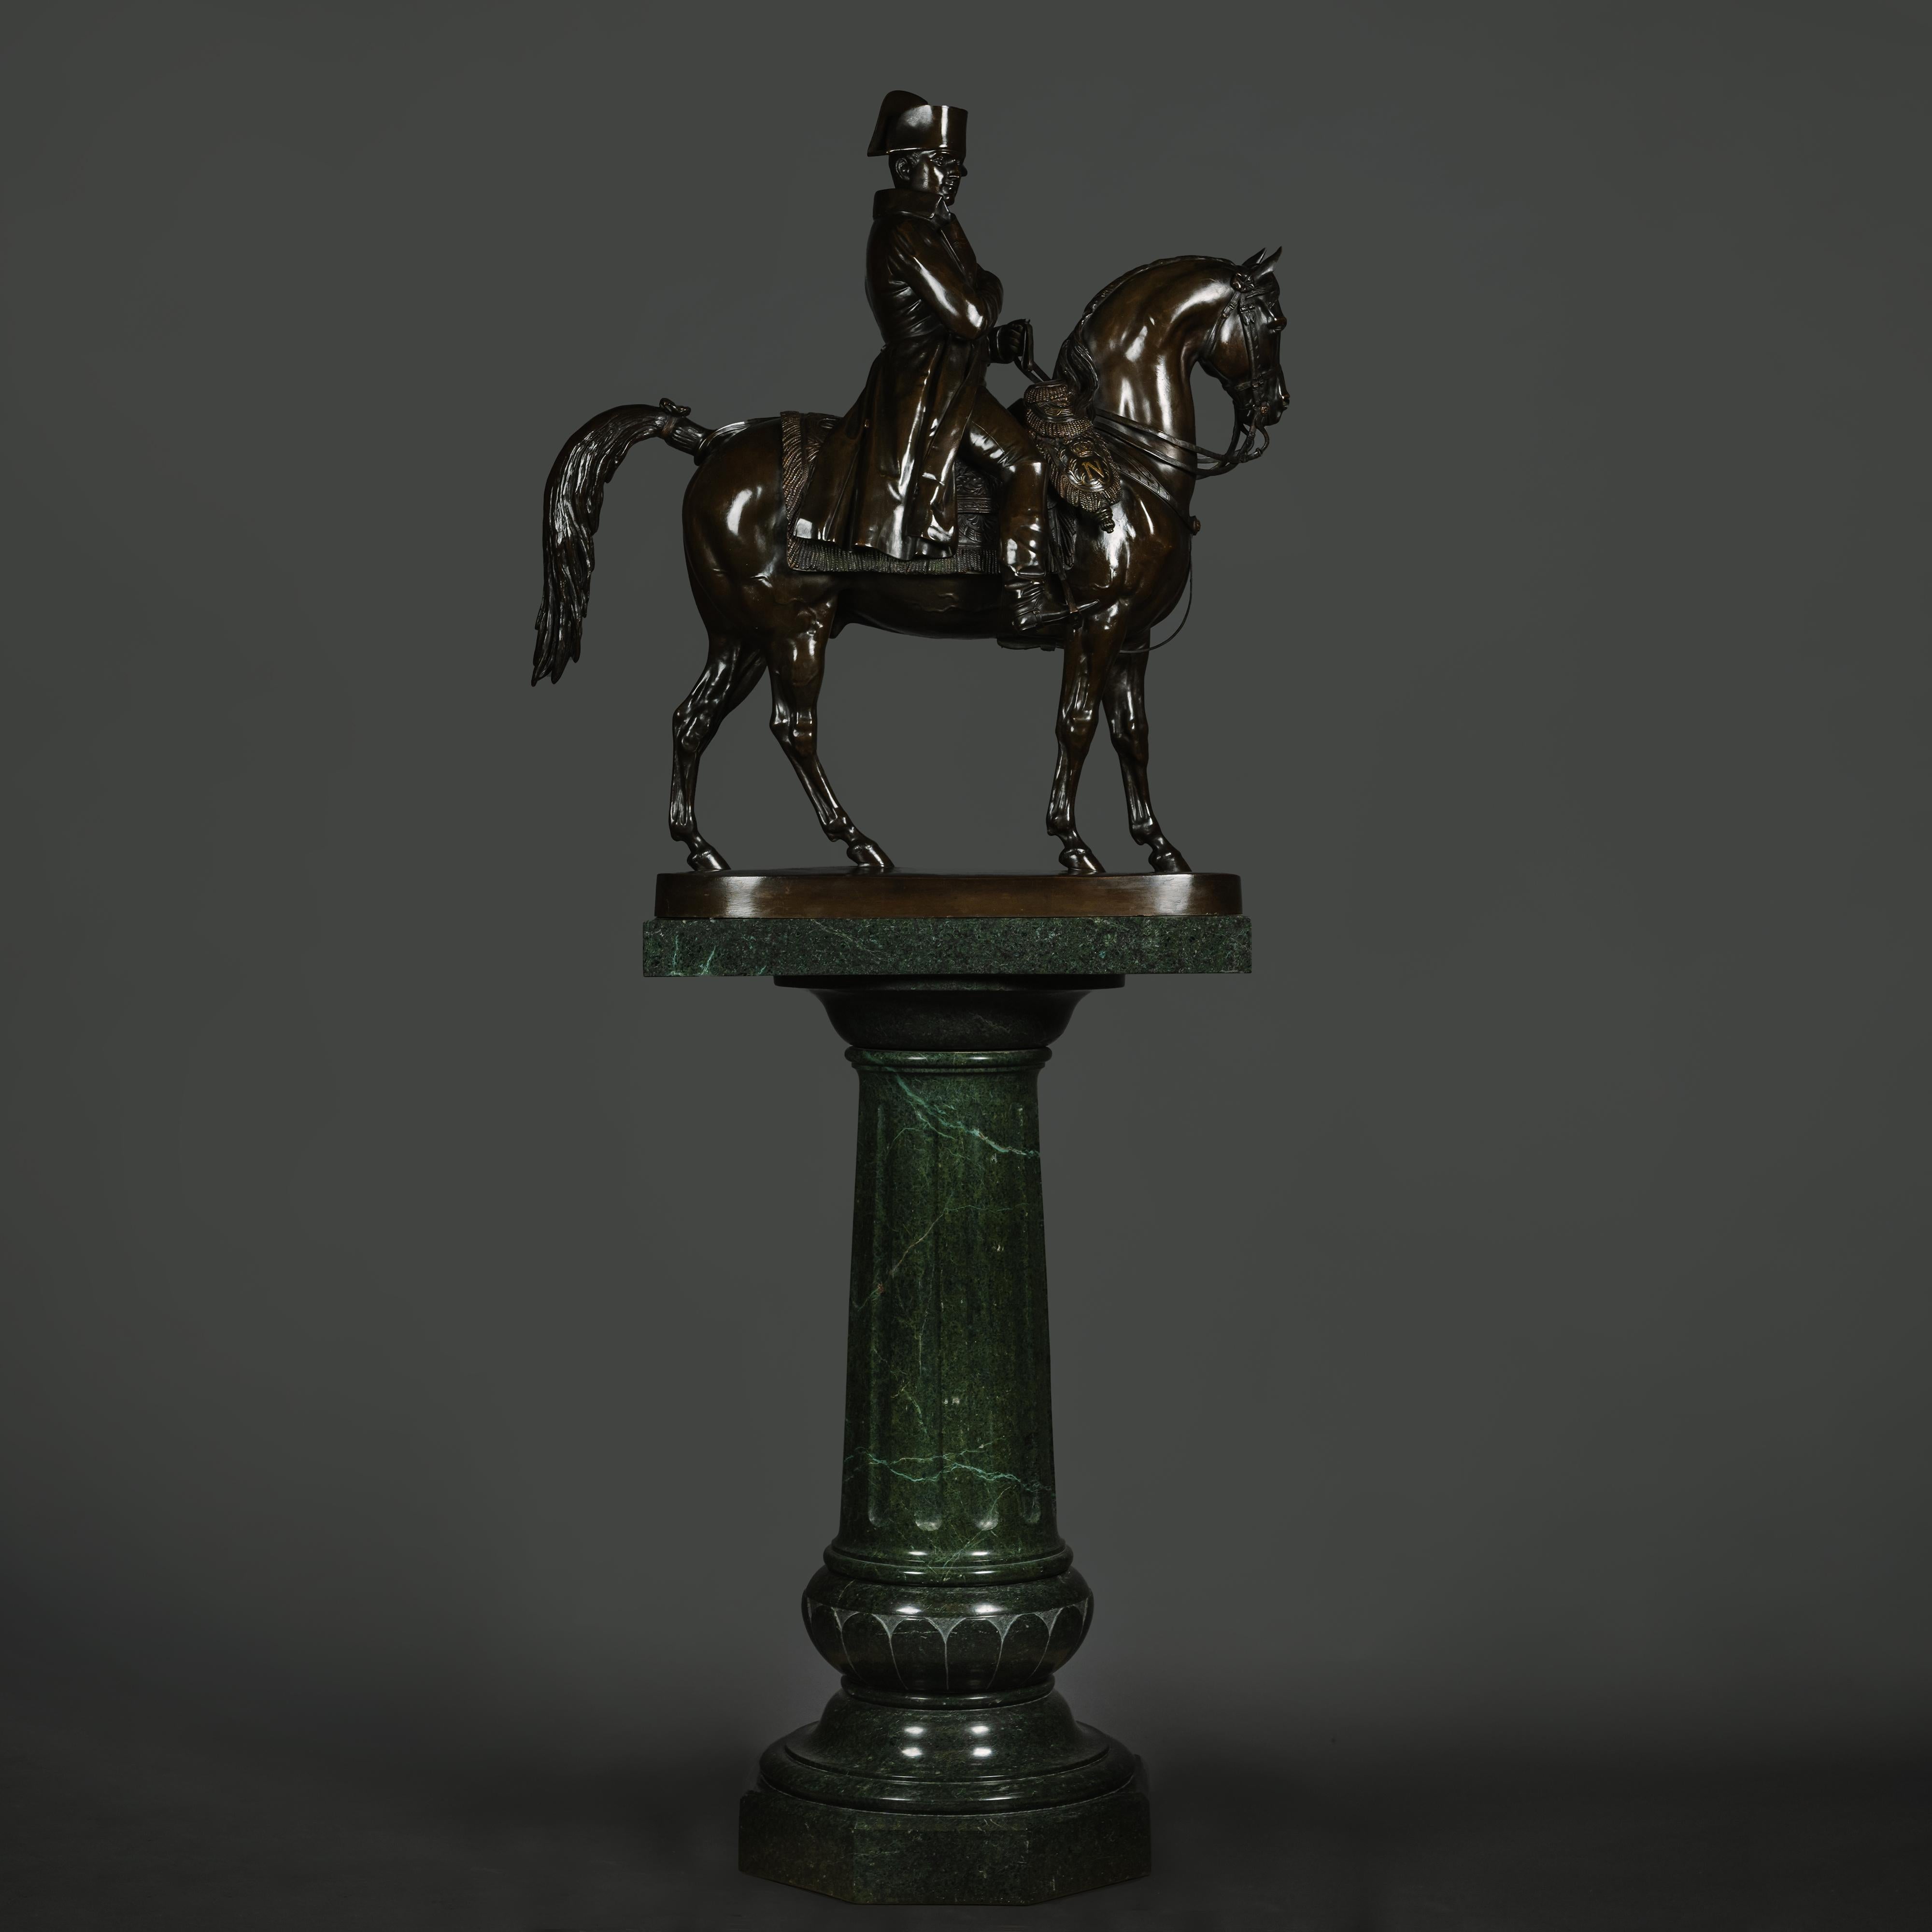 Grande sculpture en bronze patiné de l'empereur Napoléon à cheval, fondue par Susse Frères, Paris, d'après le modèle d'Alfred Émilien O'Hara, comte de Nieuwerkerke (1811-1892).

Bronze patiné brun foncé.  

L'empereur Napoléon est représenté à